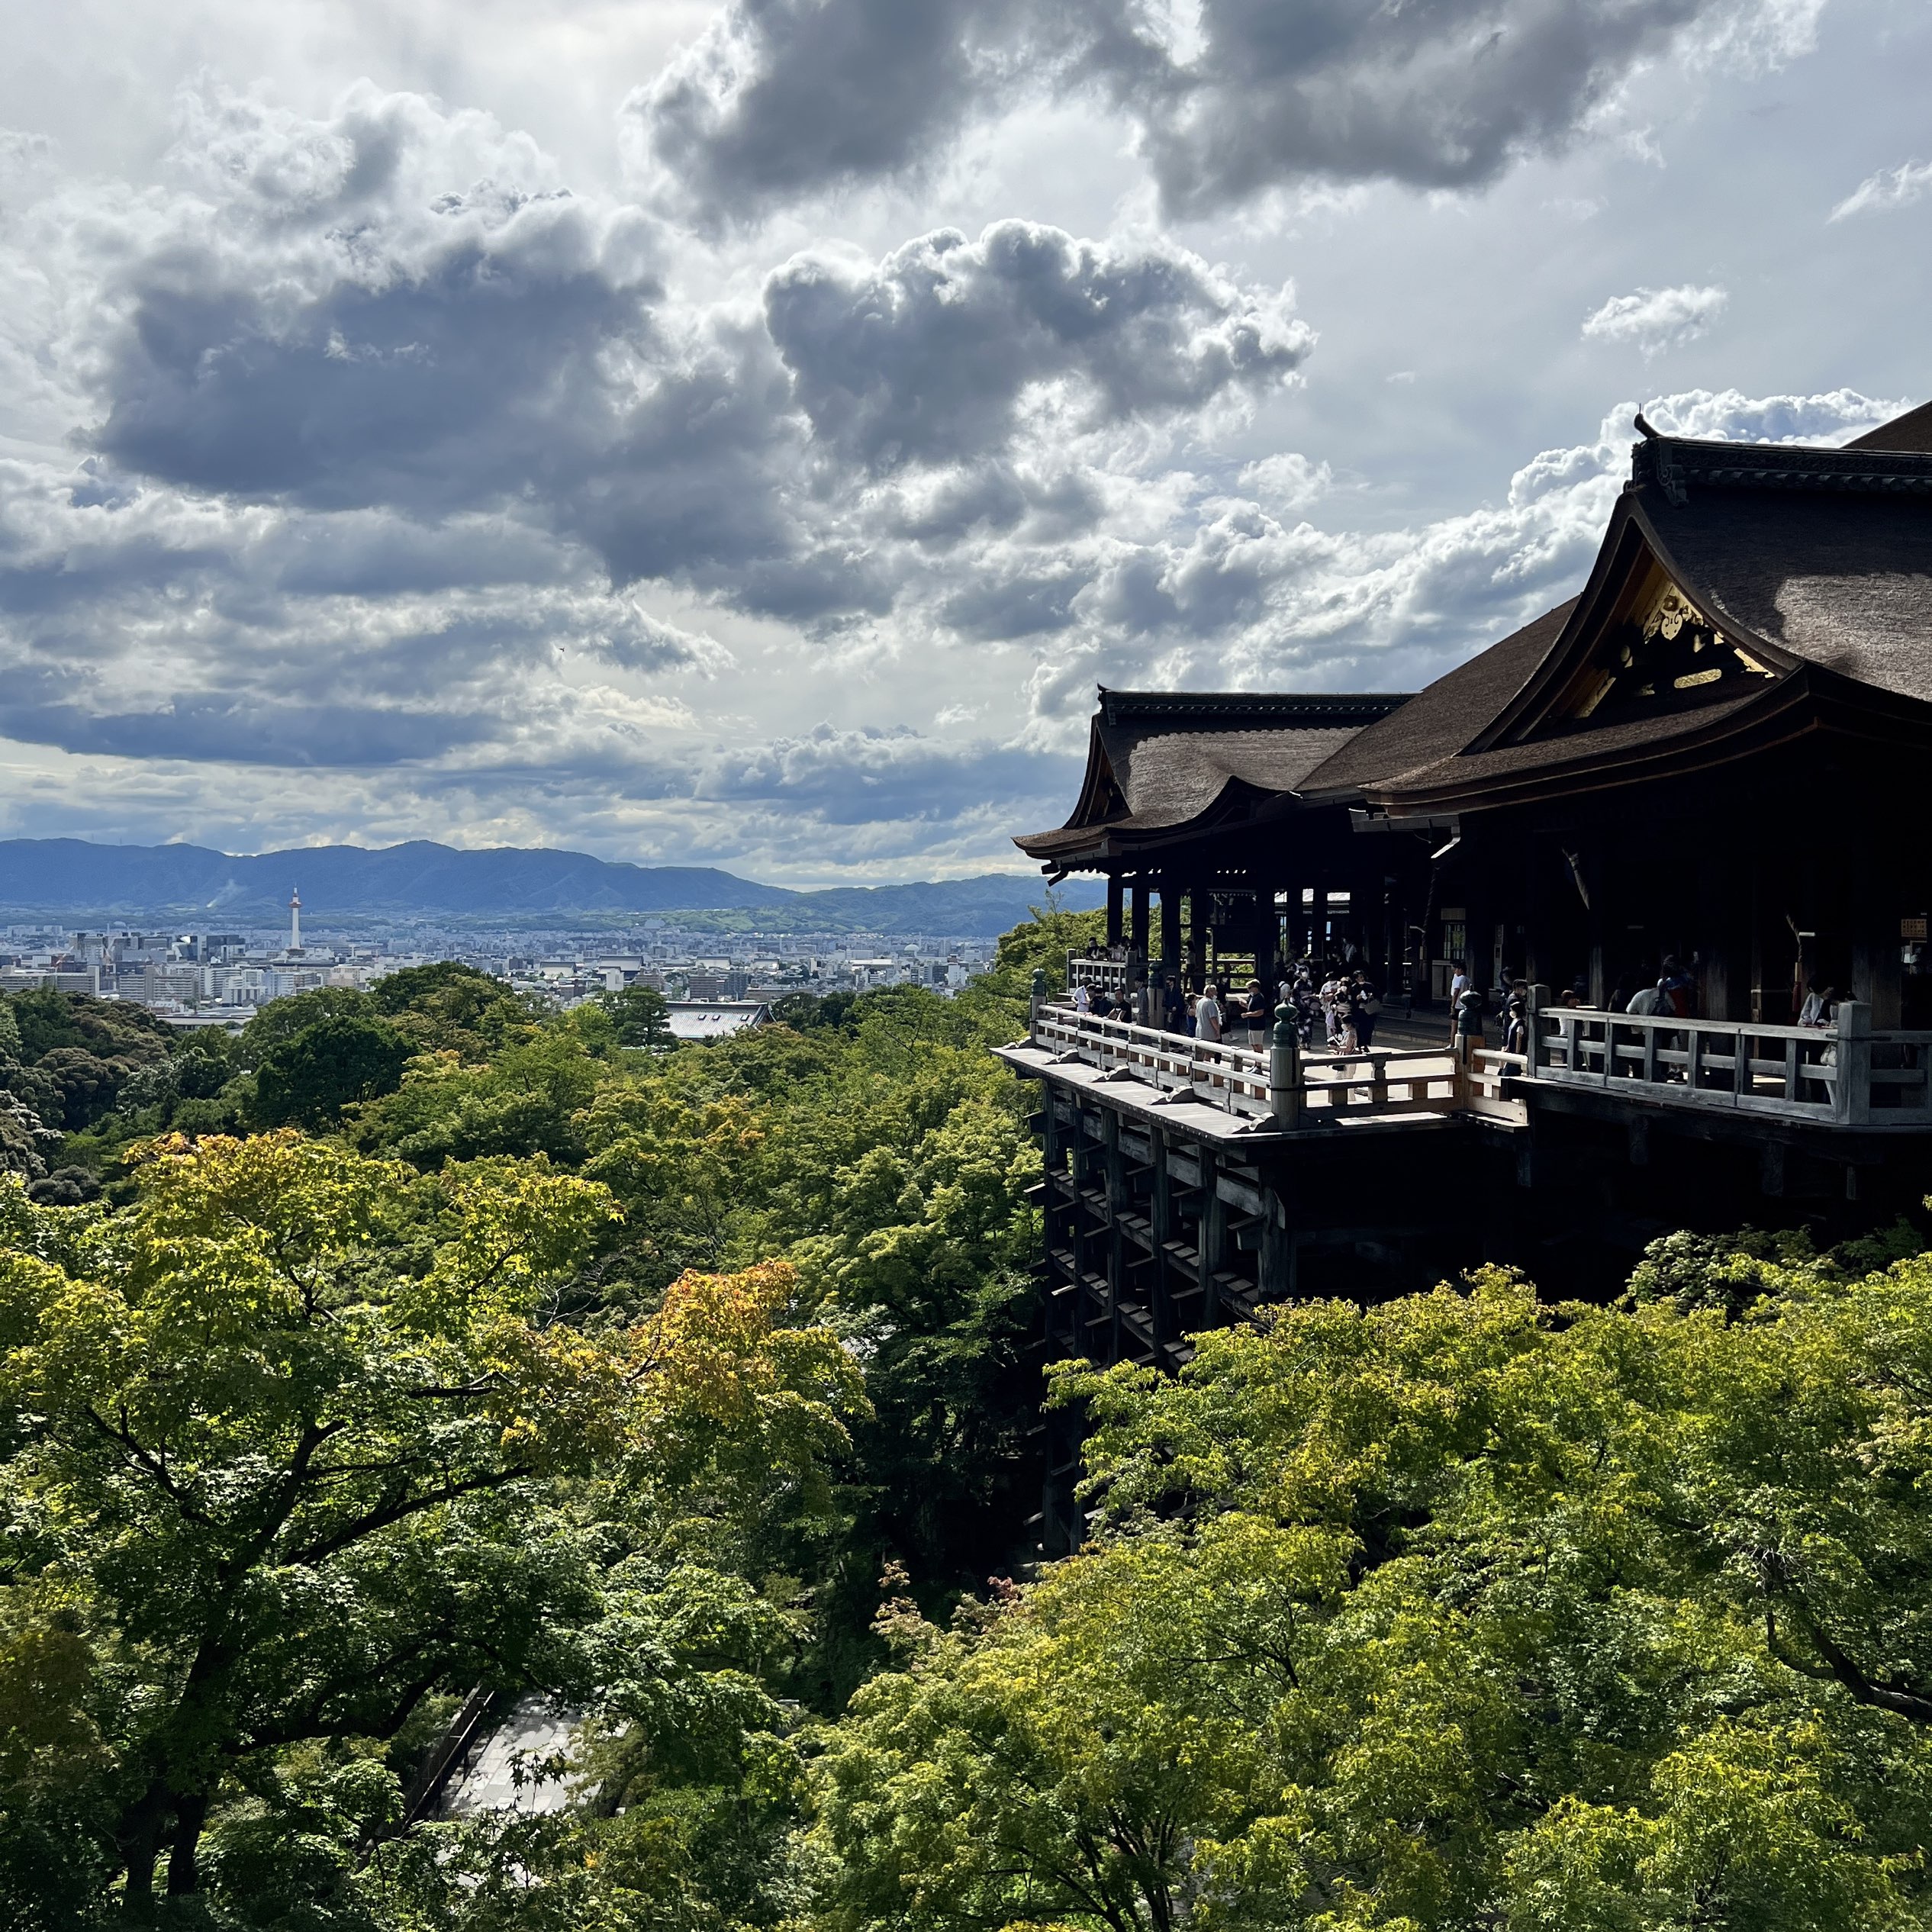 【京都】说到京都,人人都知道的有名的寺院